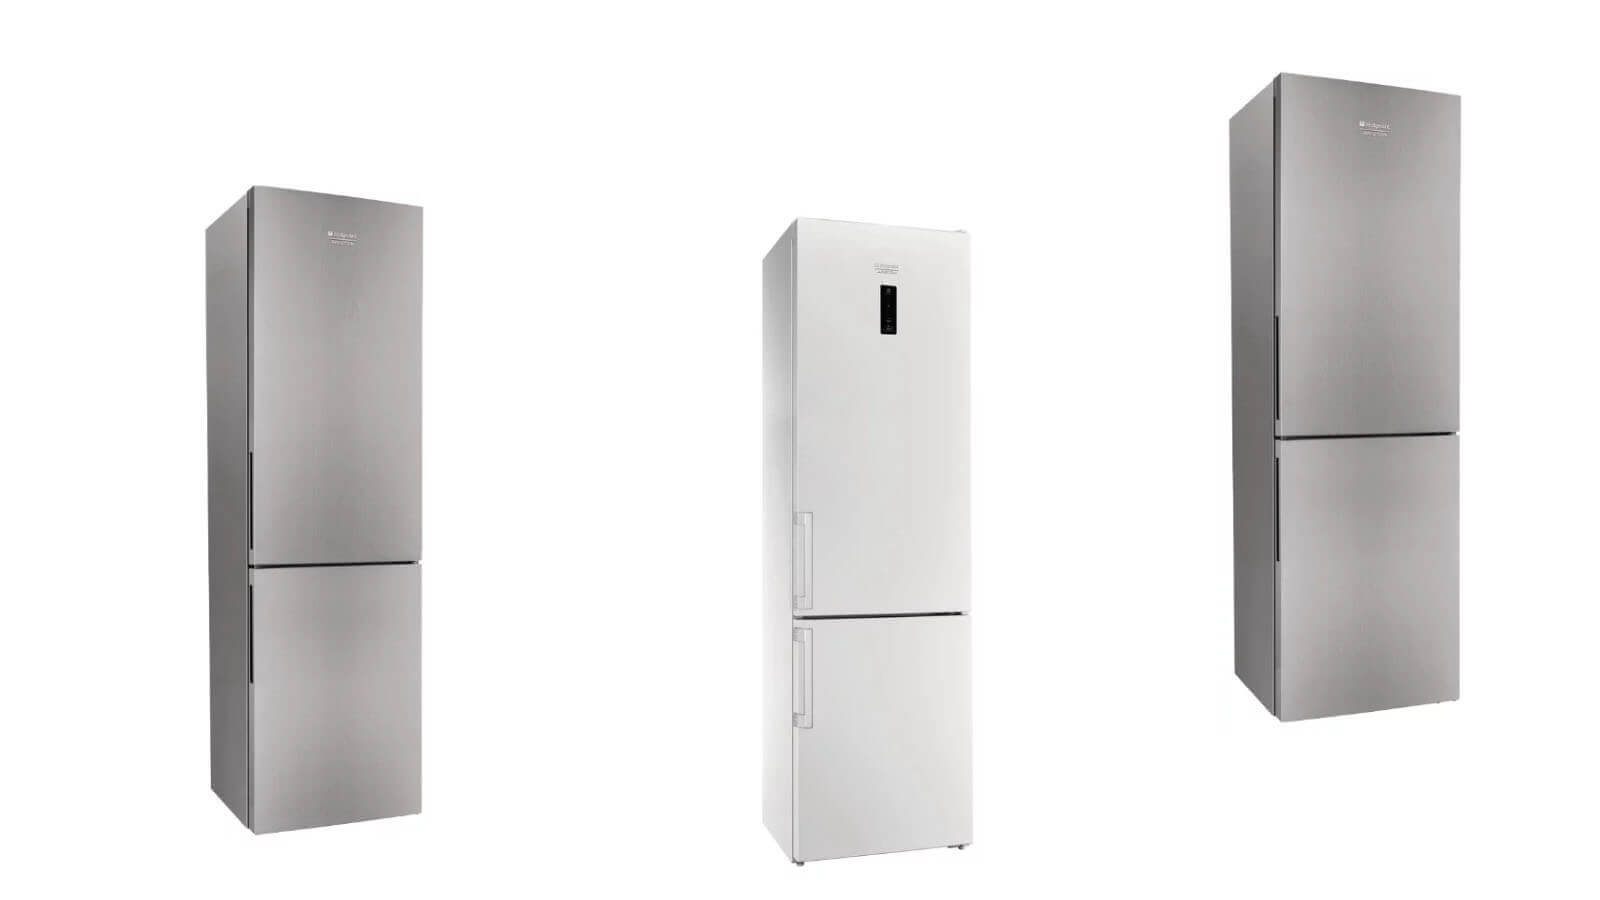 Двухкамерный холодильник hotpoint-ariston — встраиваемые модели с системой no frost, отзывы